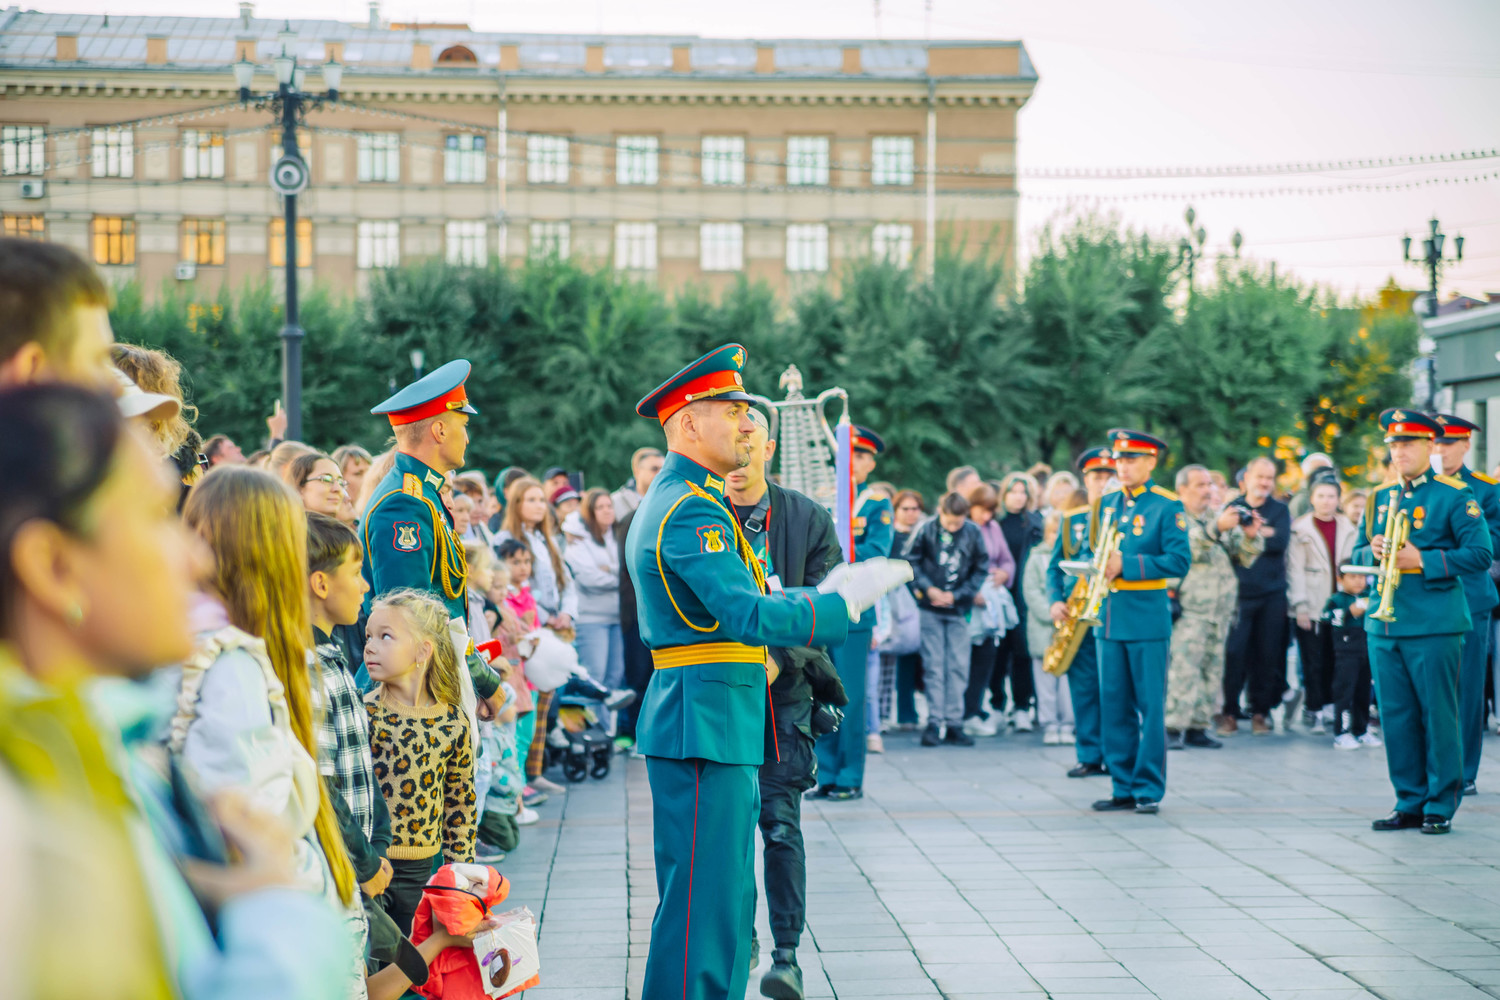 Тысячи зрителей собрал второй фестиваль «Арсеньев LIVE в Хабаровске»: фото